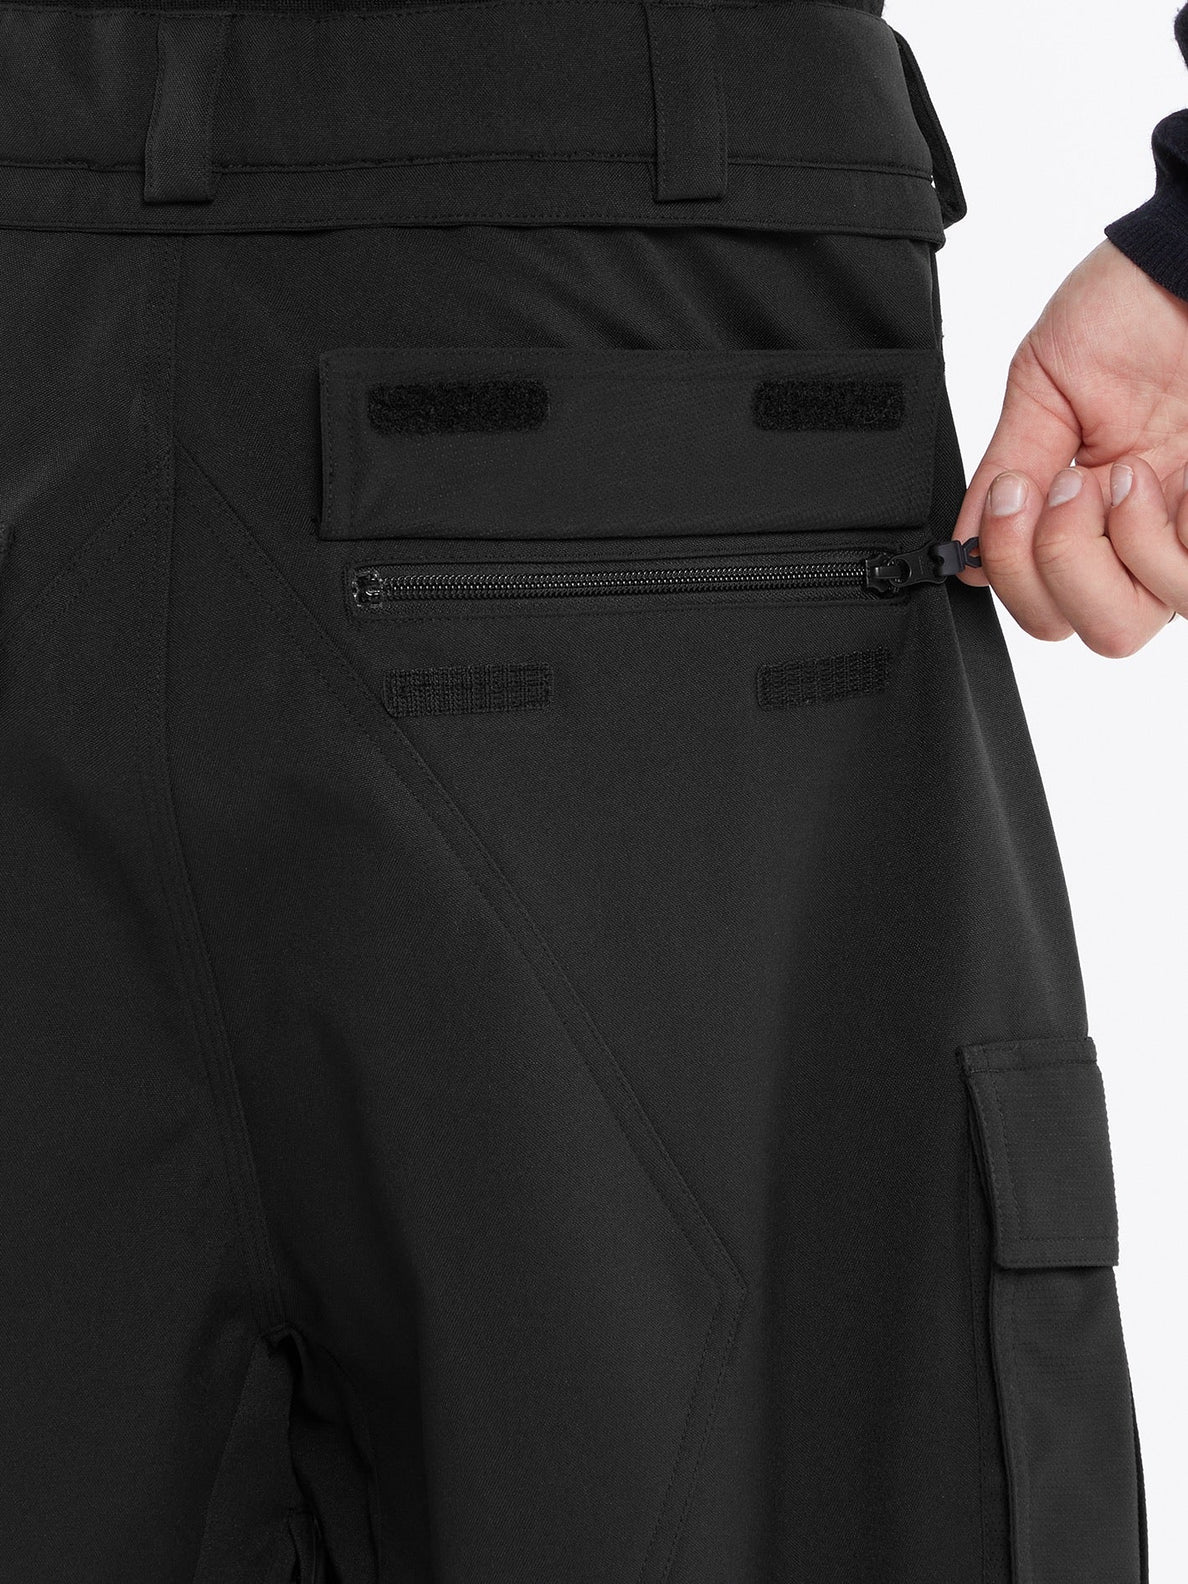 Nwrk Baggy Trousers - BLACK (G1352409_BLK) [34]